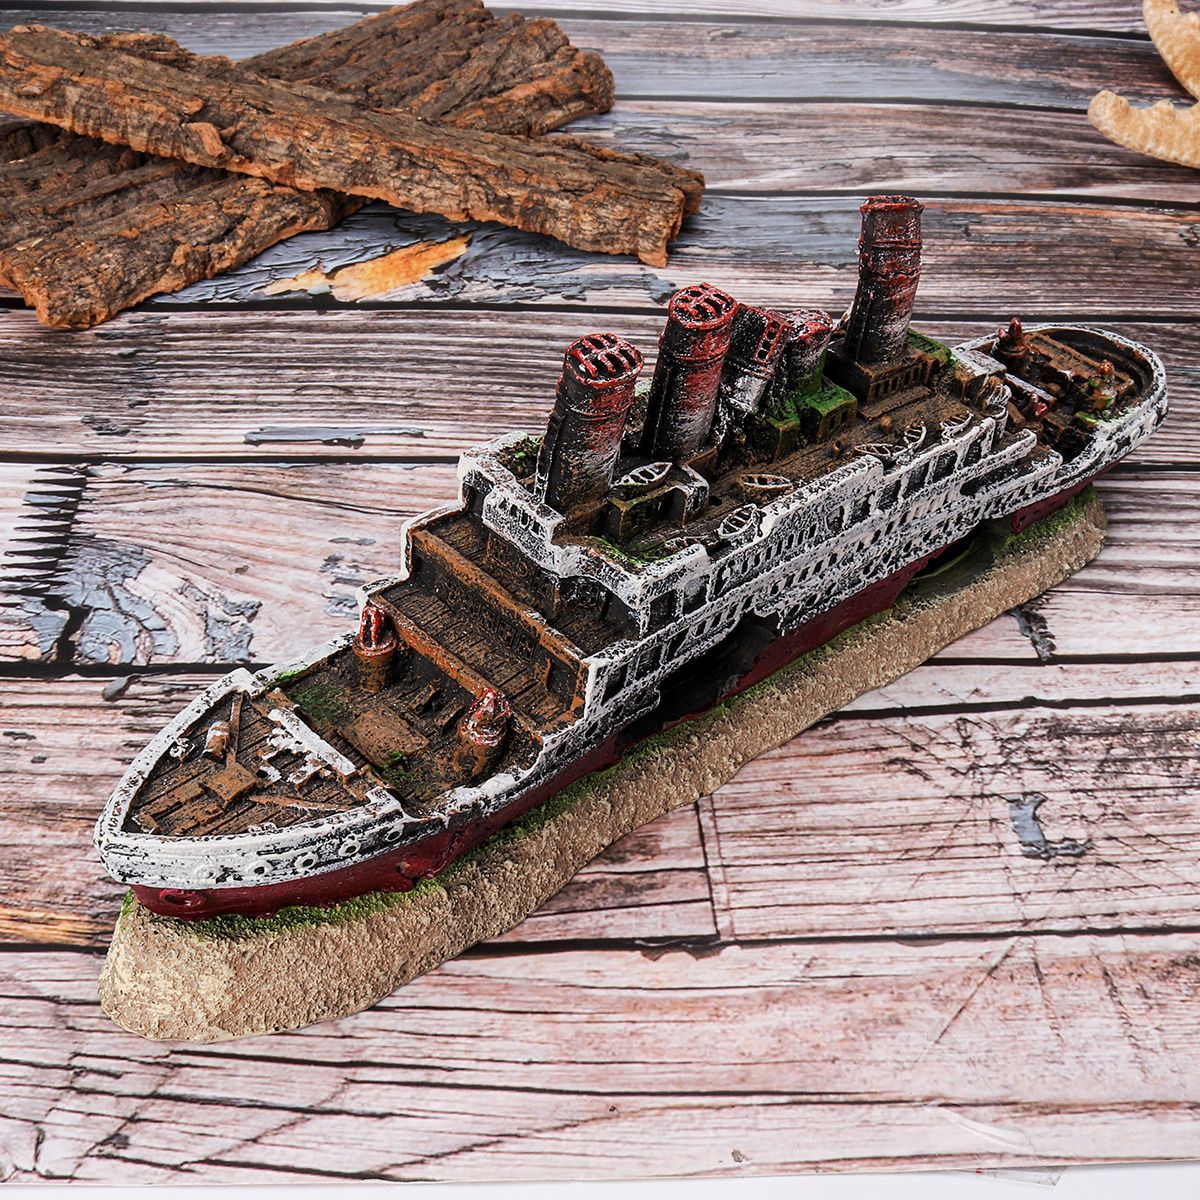 Aquarium-Ship-Ornament-Wreck-Boat-Fish-Tank-Cave-Resin-Decoration-27x52x95cm-1704612